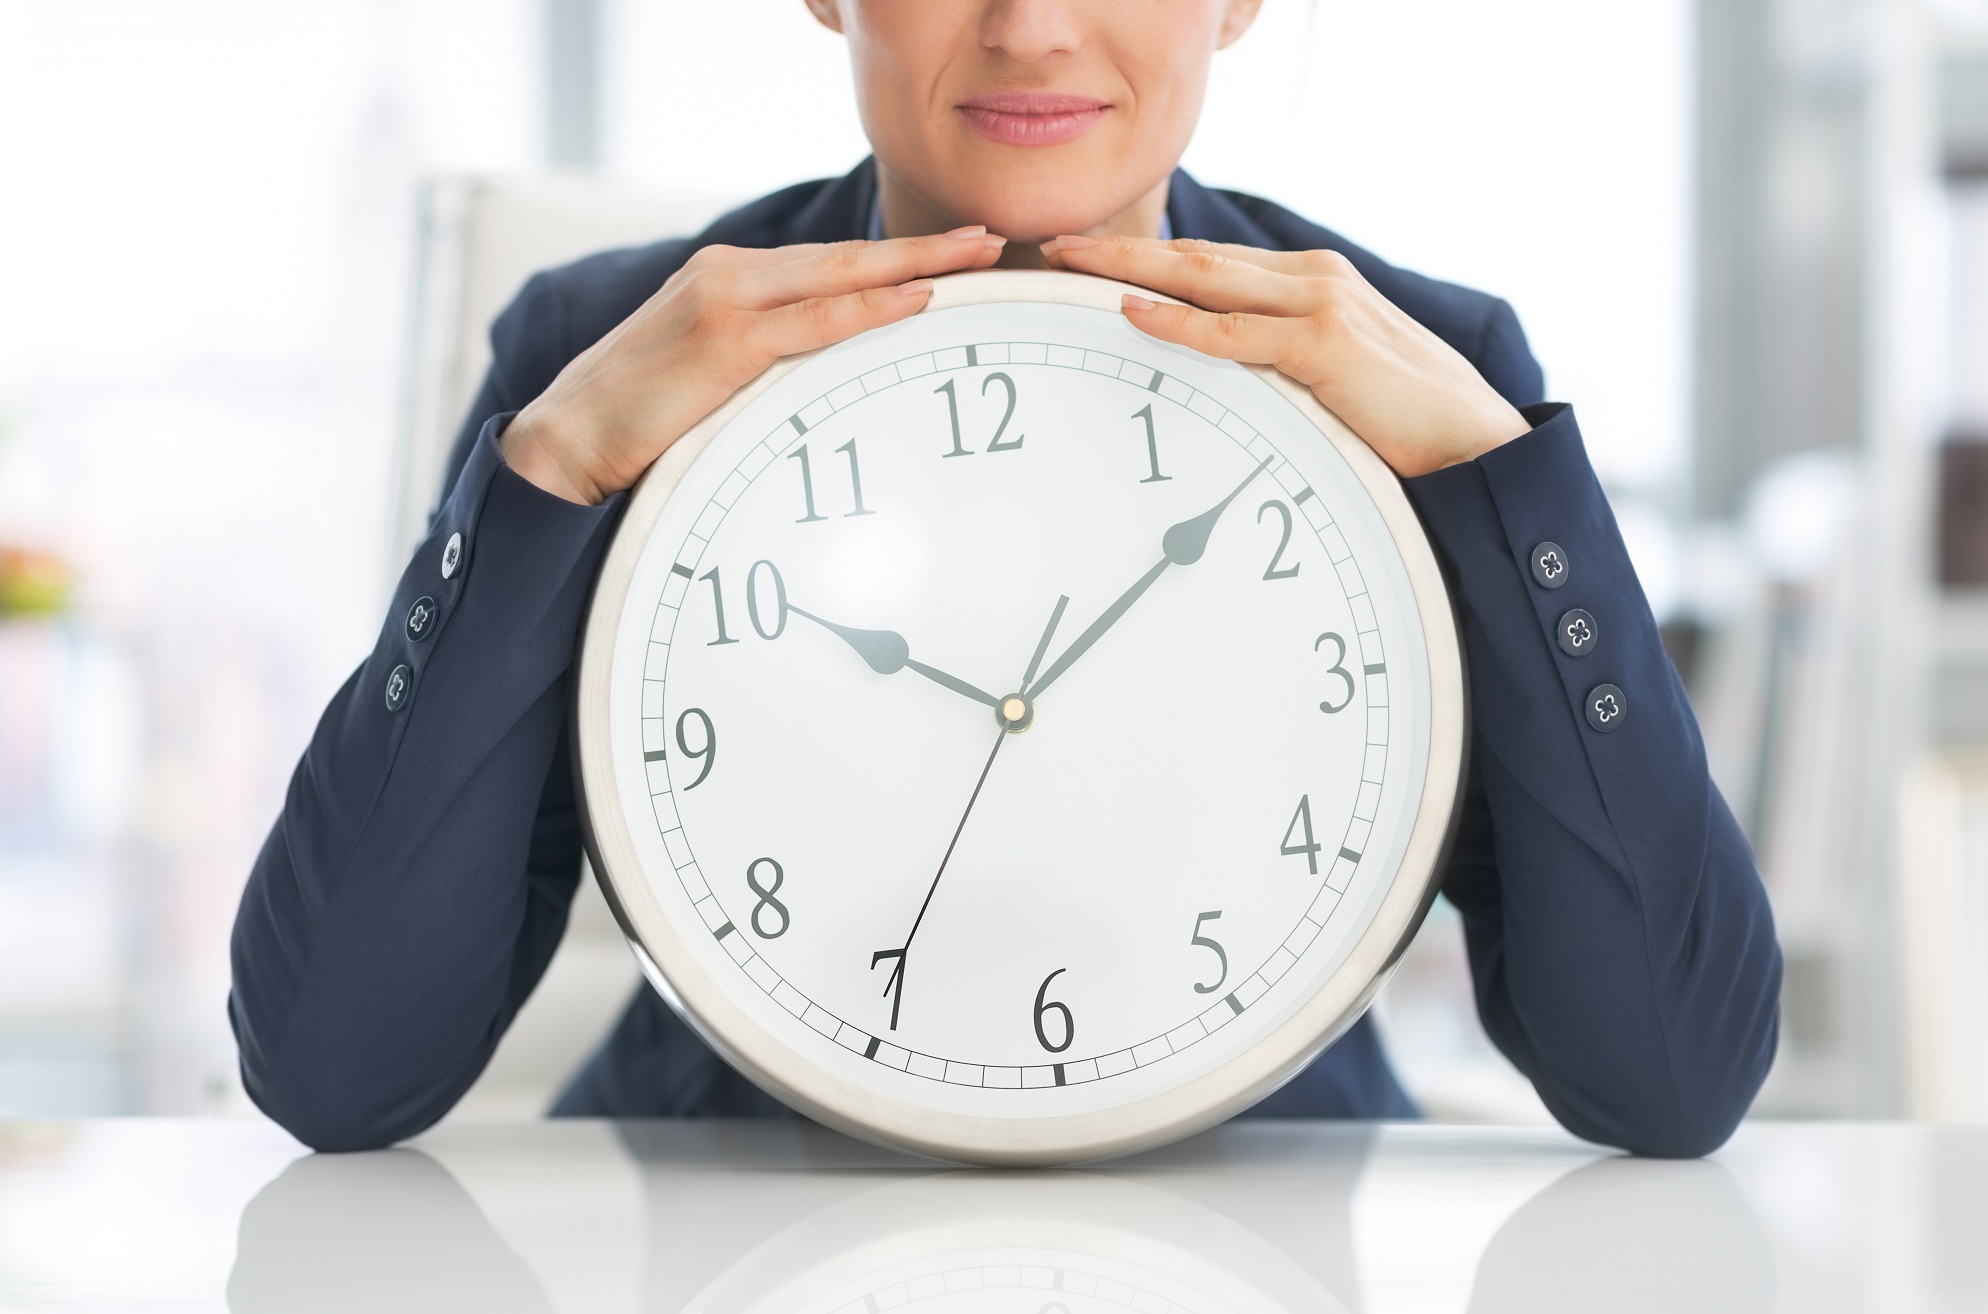 Правильно ли вы выбрали время для продажи бизнеса?